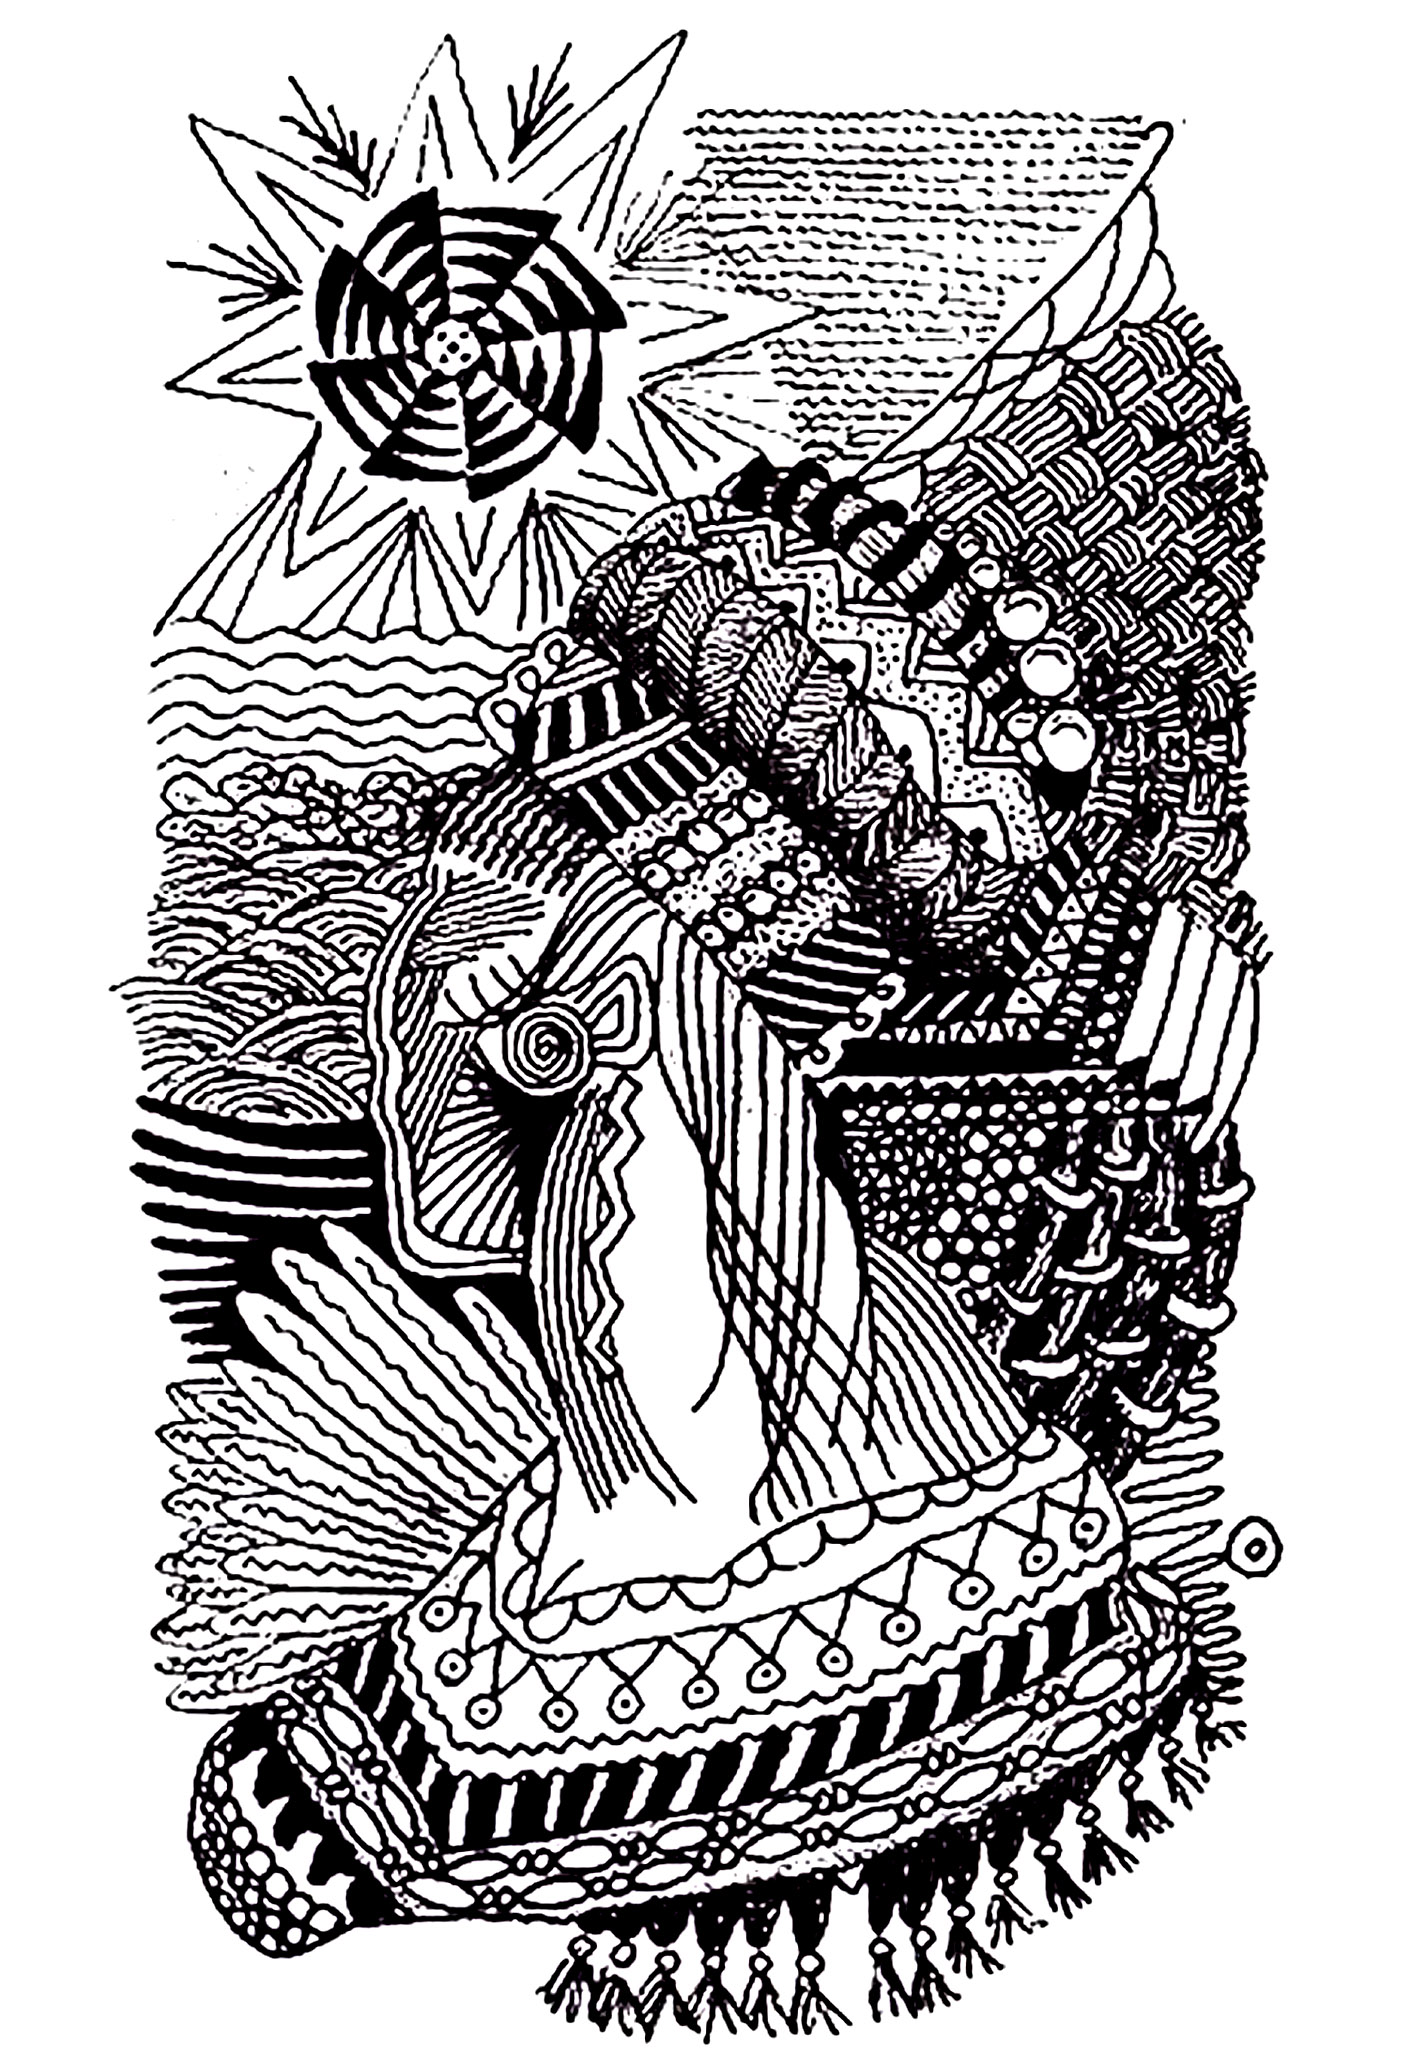 Dibujo de una mujer africana con motivos de zentangle. Las líneas están dibujadas con cierta suavidad, y los patrones de Zentangle añaden un toque de originalidad y sofisticación.Esta página para colorear es una forma estupenda de evadirte y volver a conectar con tu lado creativo.